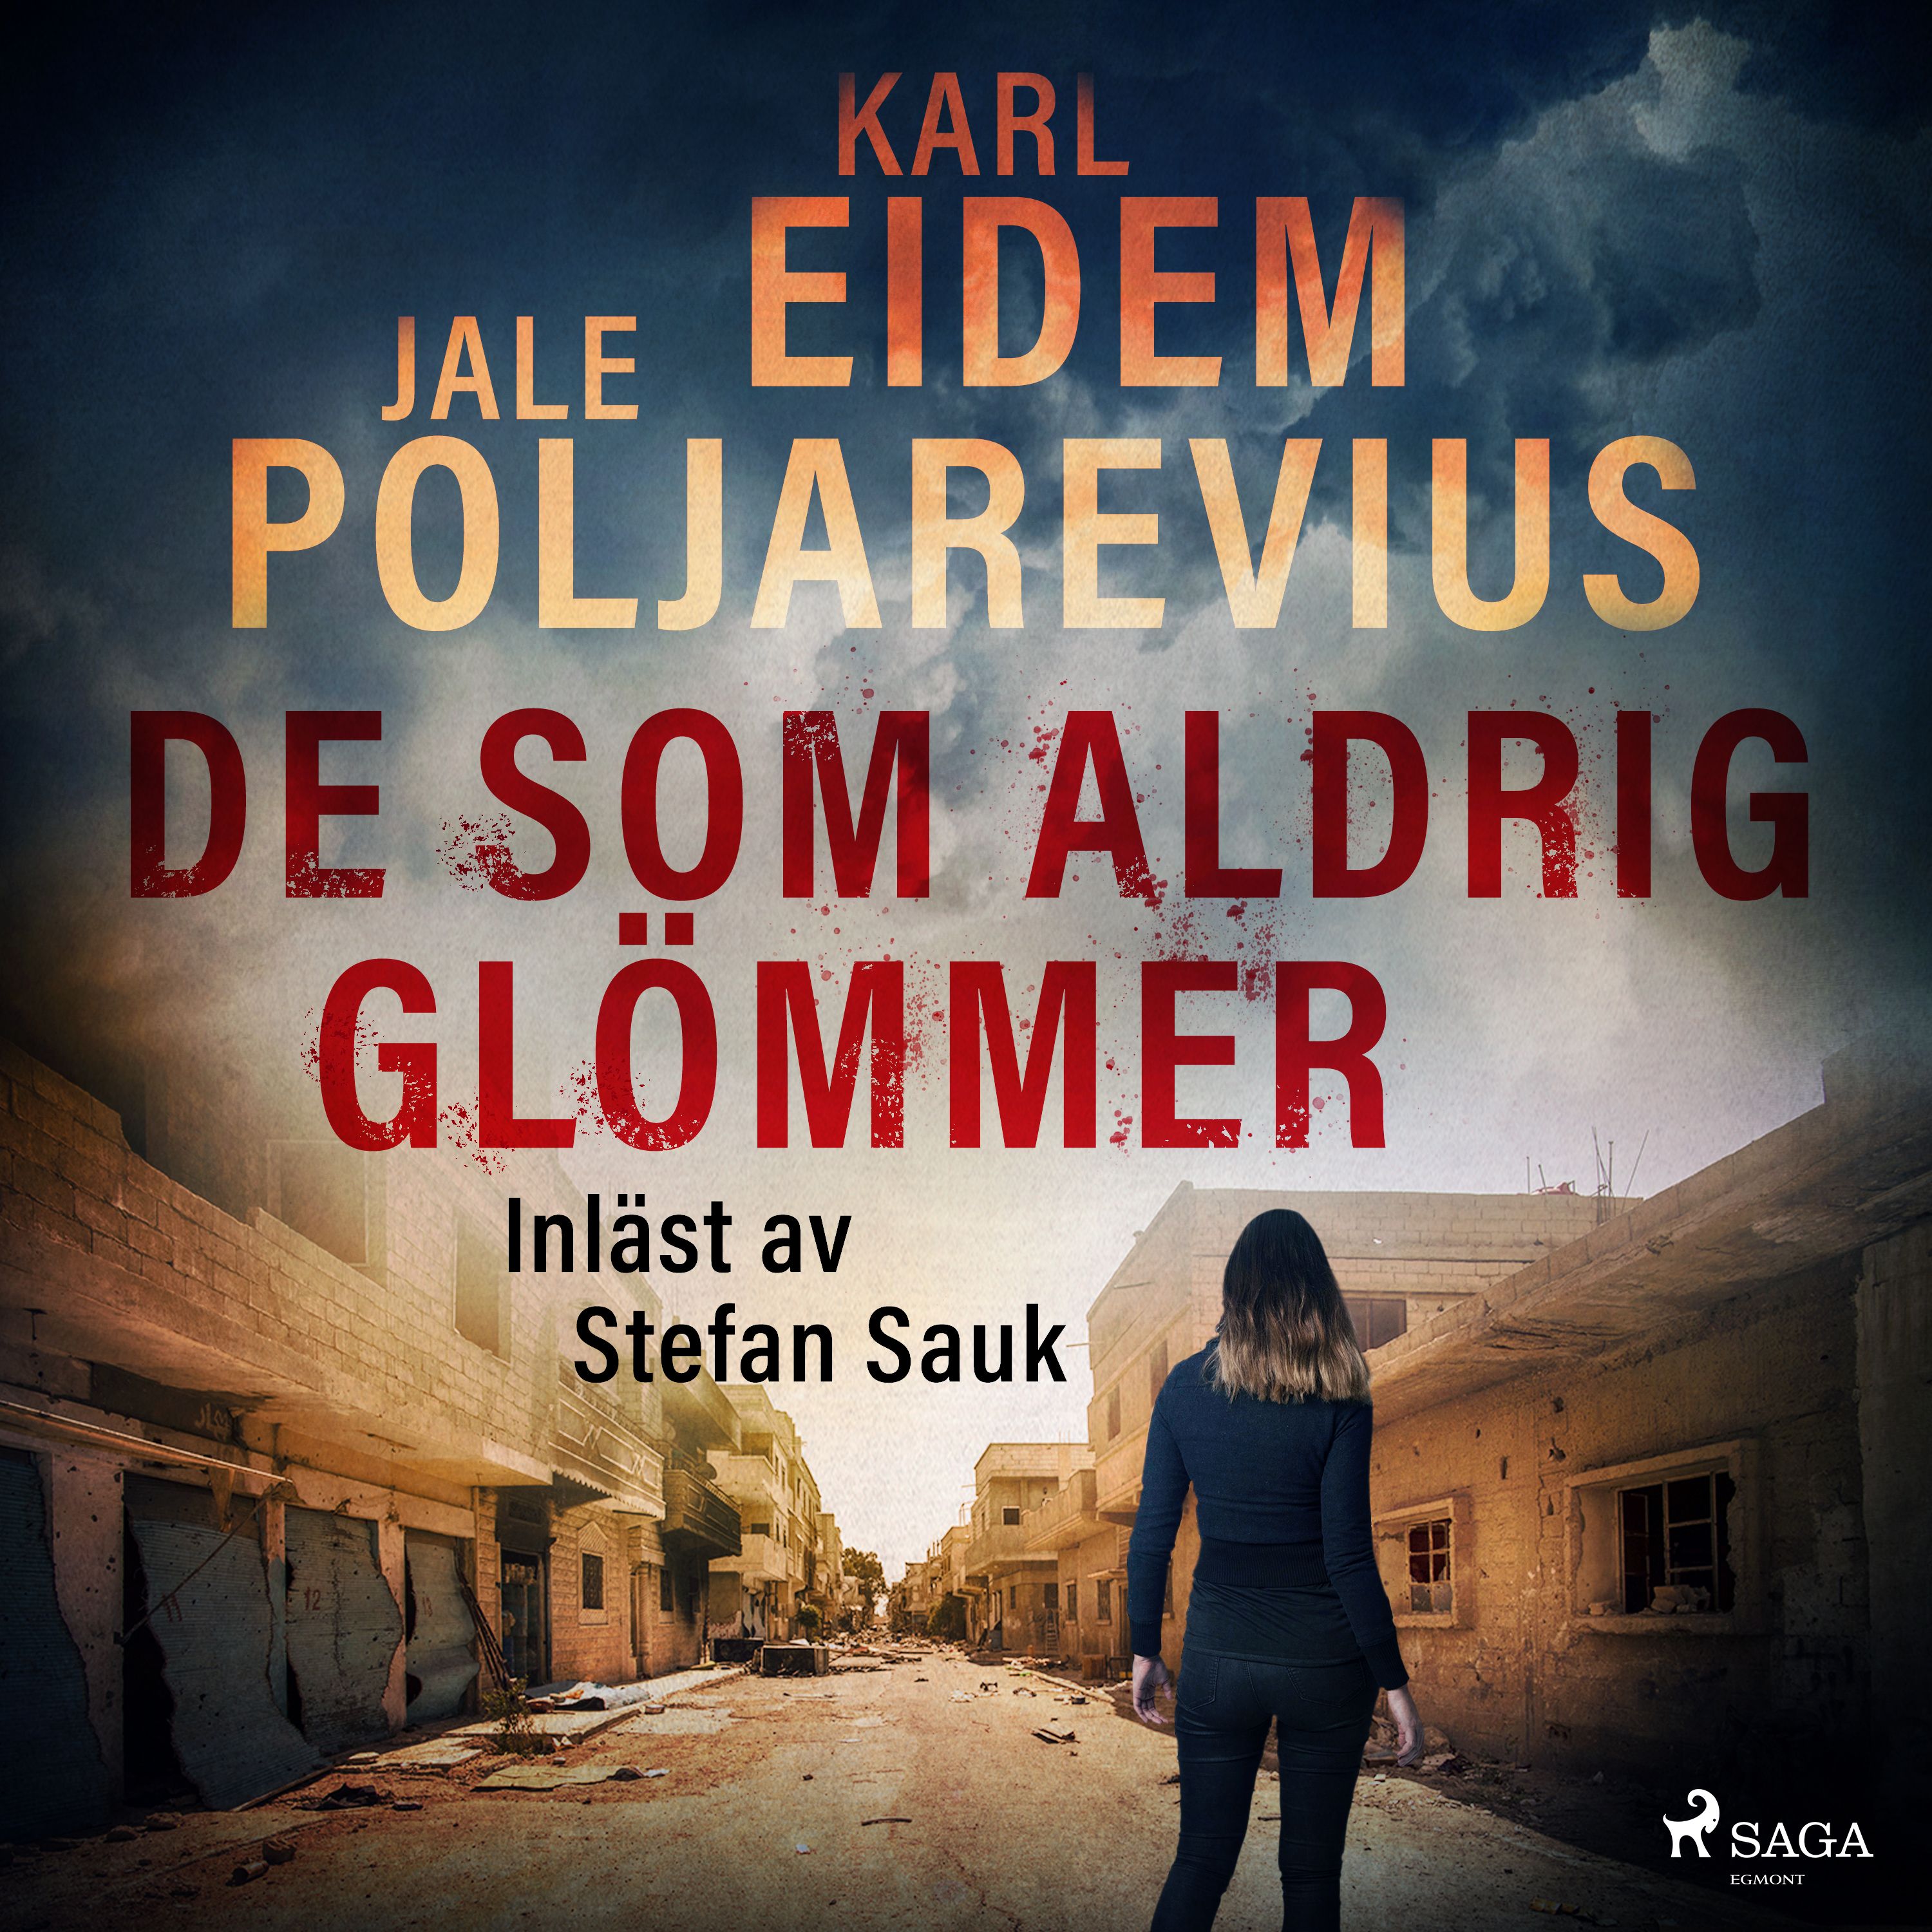 De som aldrig glömmer, ljudbok av Karl Eidem, Jale Poljarevius